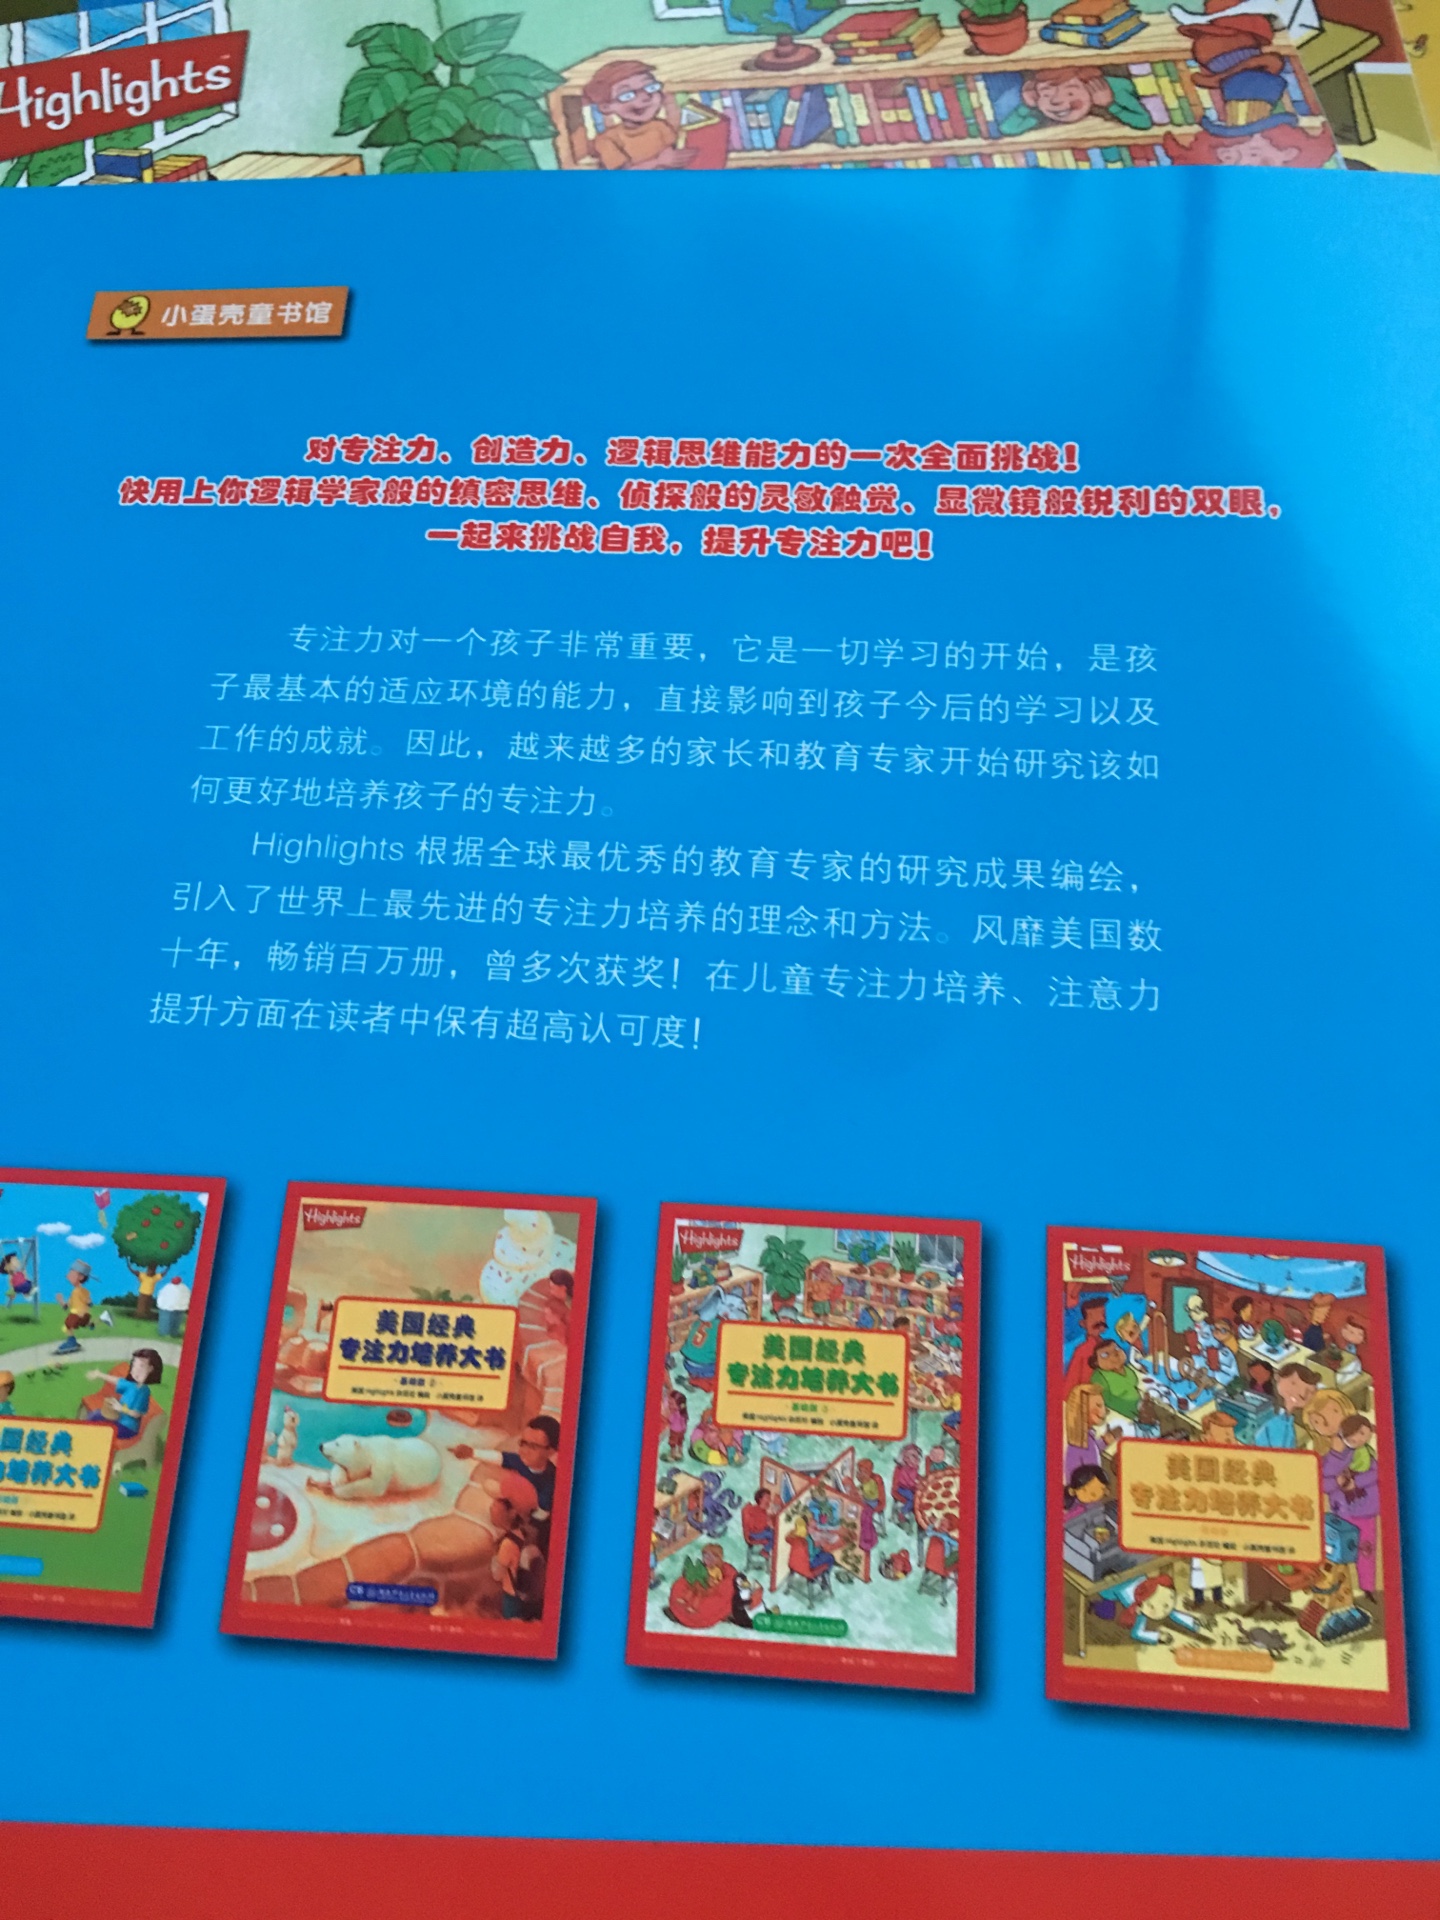 价格有点贵啊，中国孩子看这套书可以吗？，希望孩子能够喜欢。